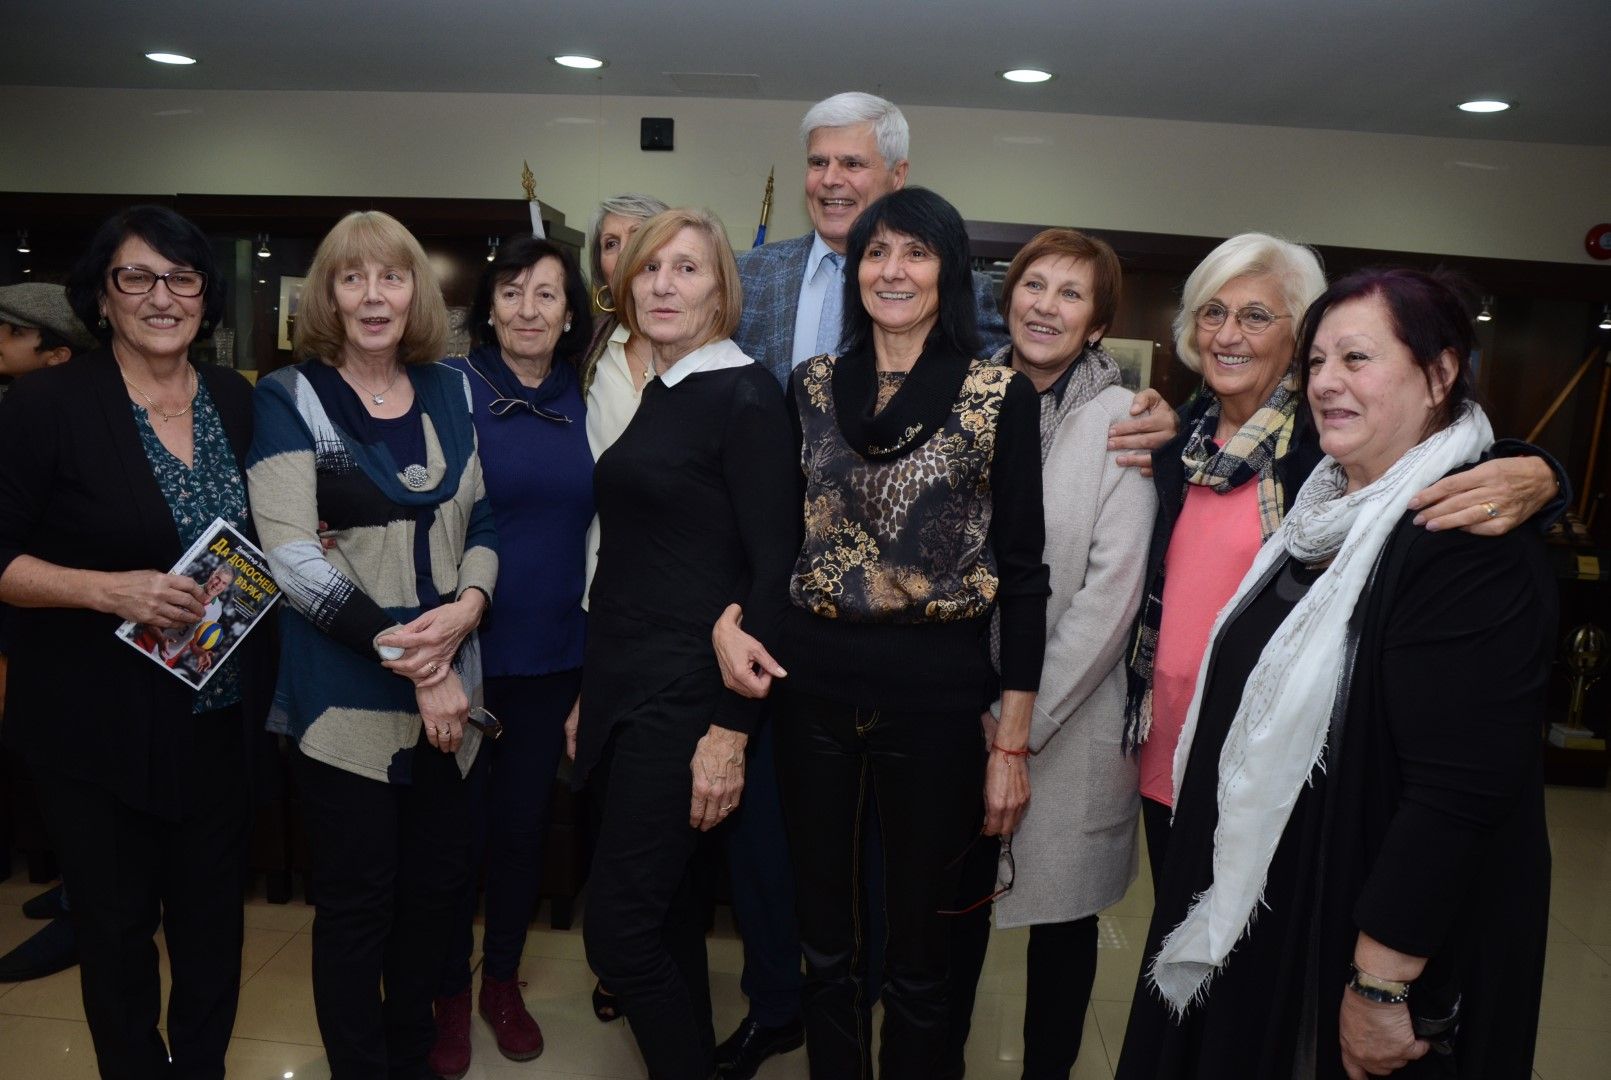 Димитър Златанов заобиколен от дами уважили събитието му